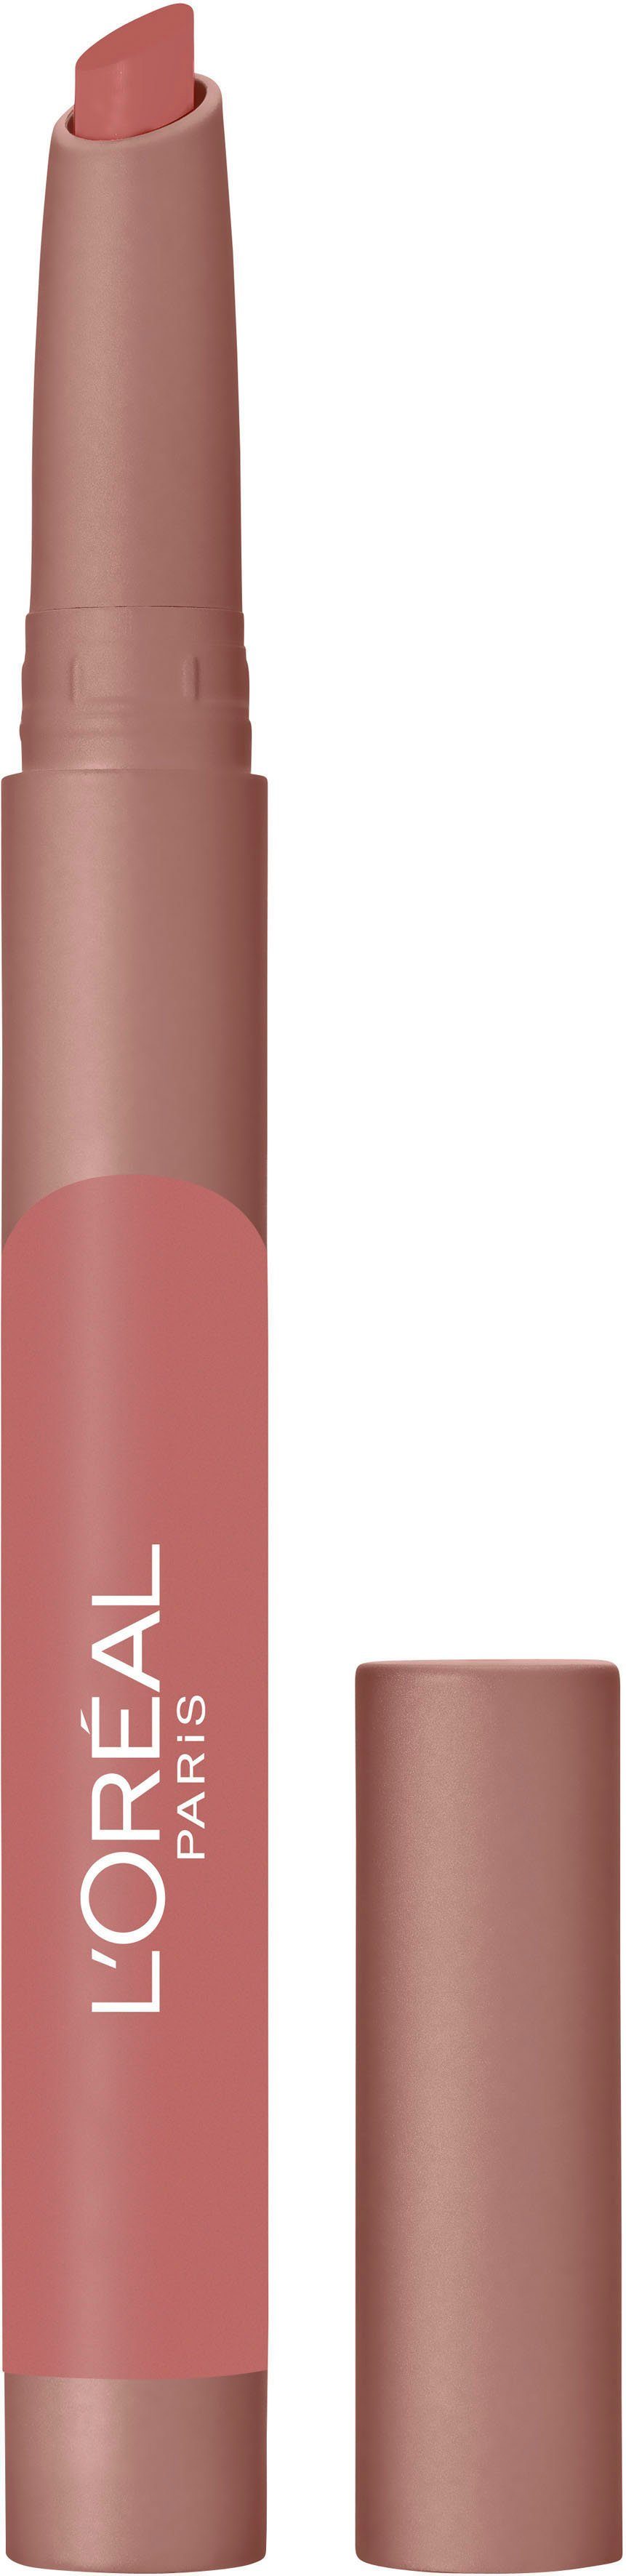 L'ORÉAL PROFESSIONNEL PARIS Lip Infaillible Lippenstift Caramel Blondie 102 L'ORÉAL Crayon PARIS Matte